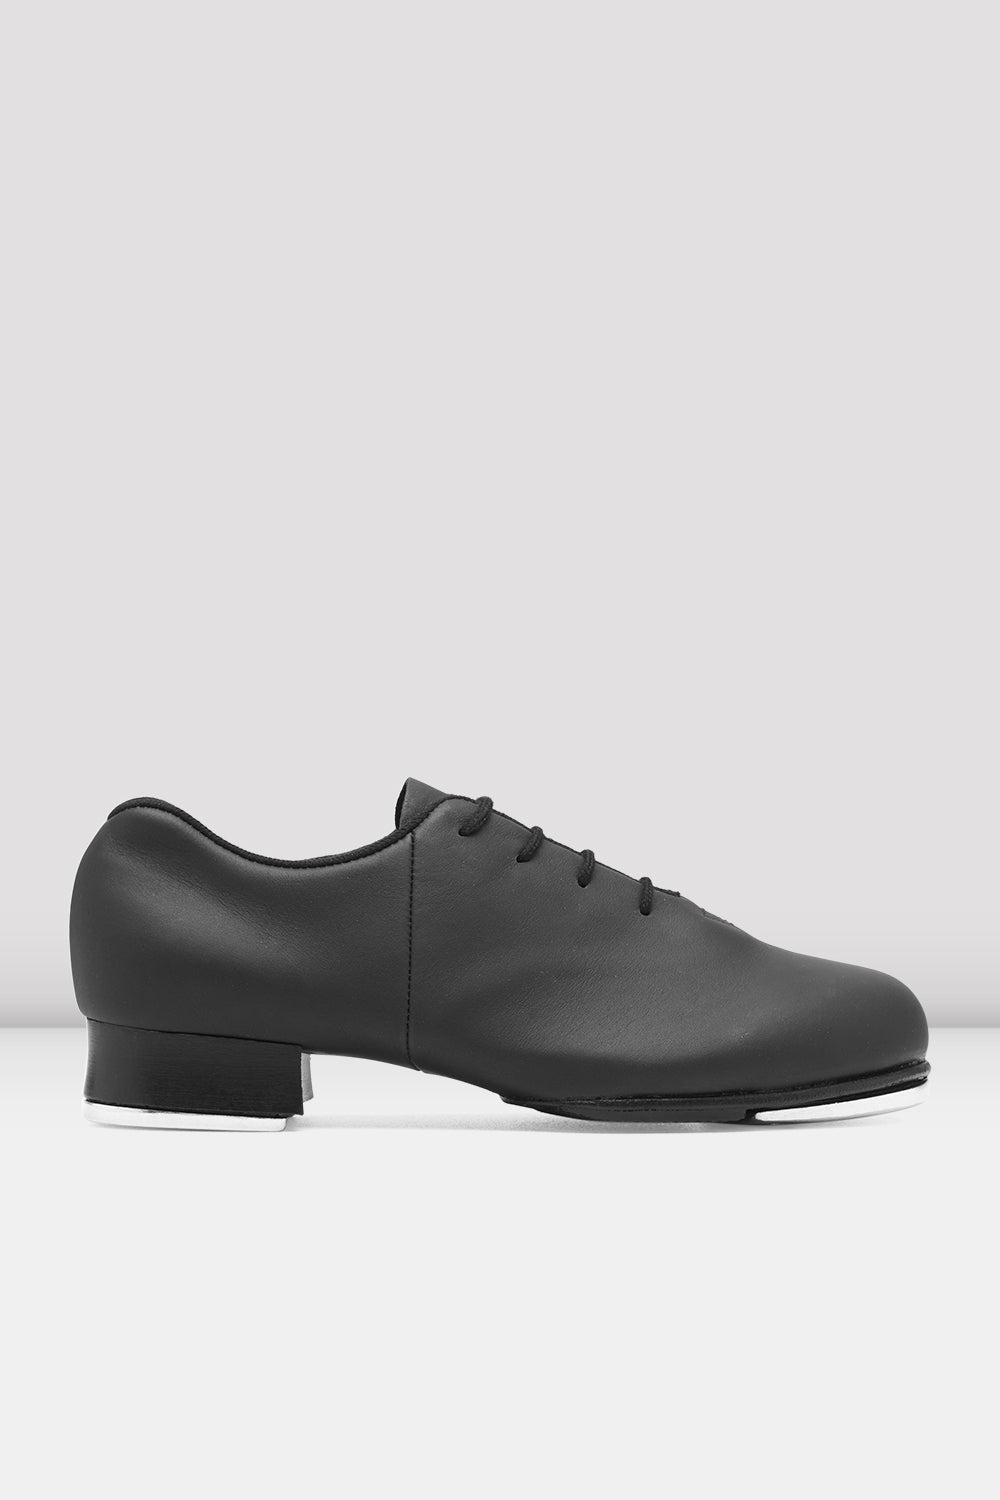 BLOCH Ladies Tap-Flex Leather Tap Shoes, Black Leather